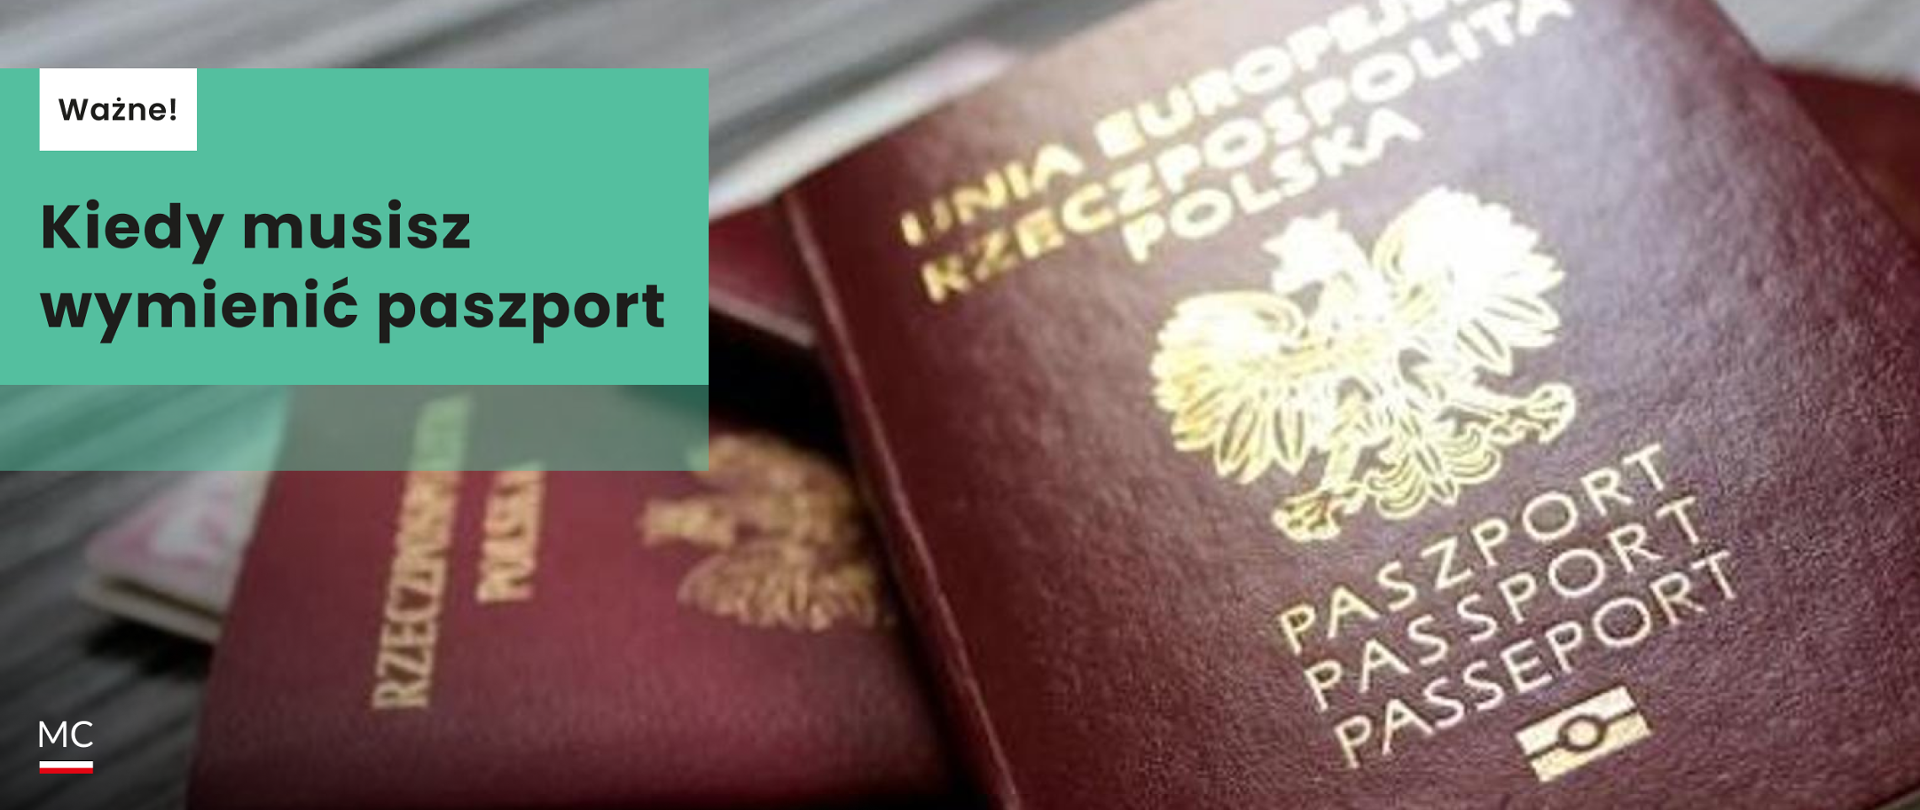 Kiedy_musisz_wymienić_paszport